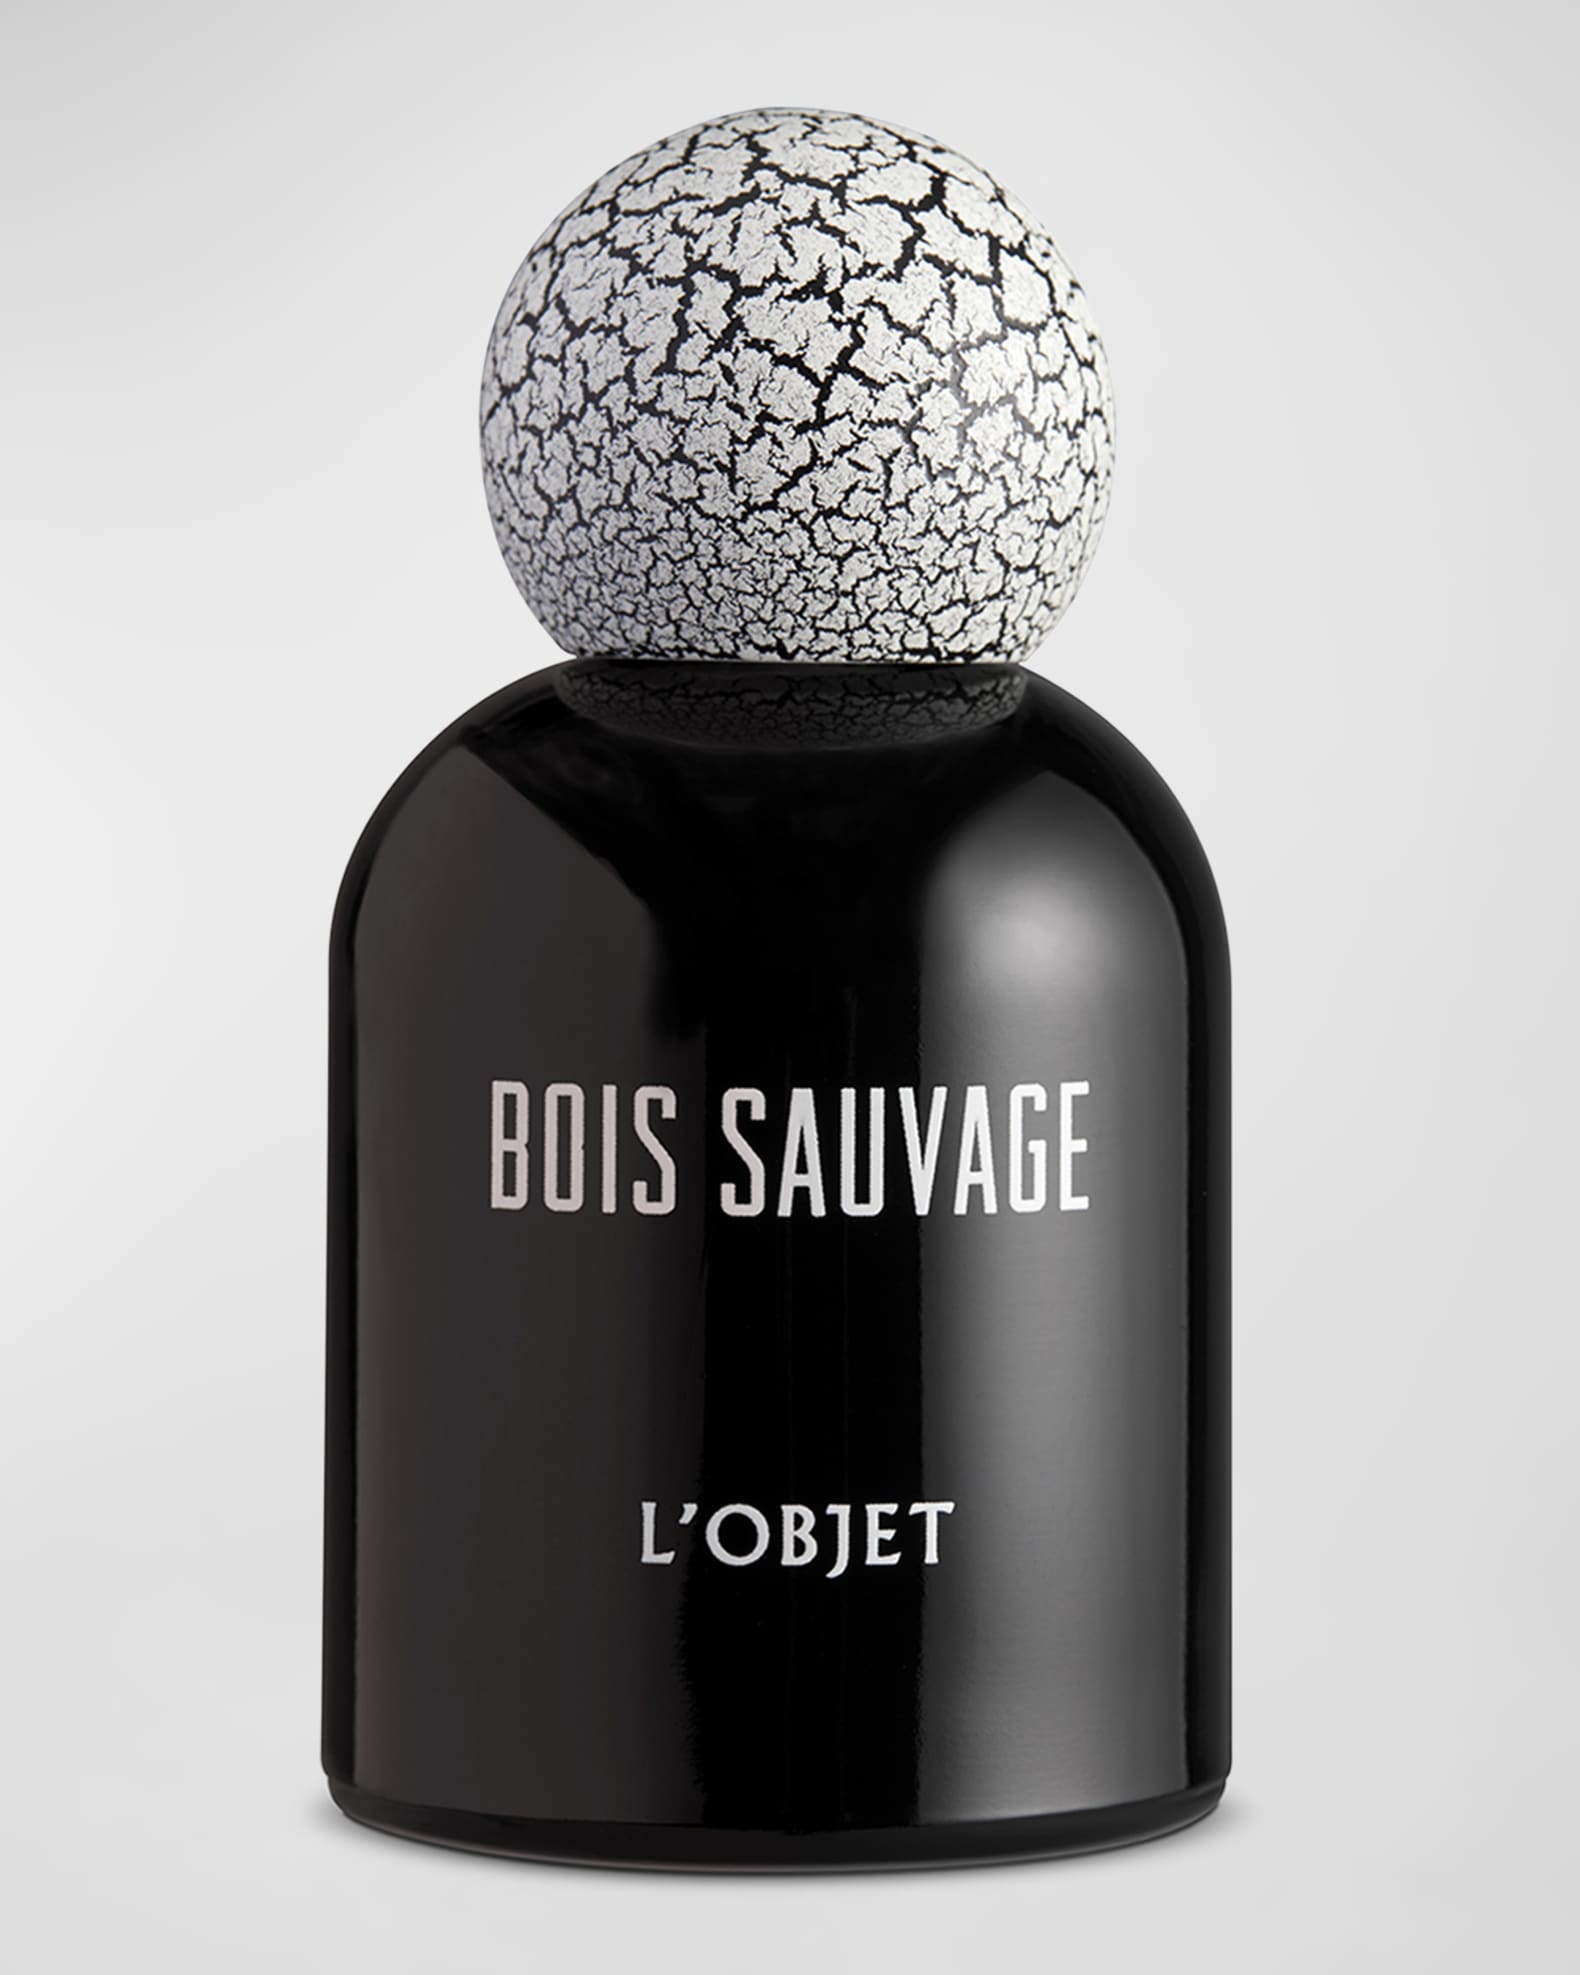 Louis Vuitton Rose des Vents, eau de Parfum - Auction Fine Jewels